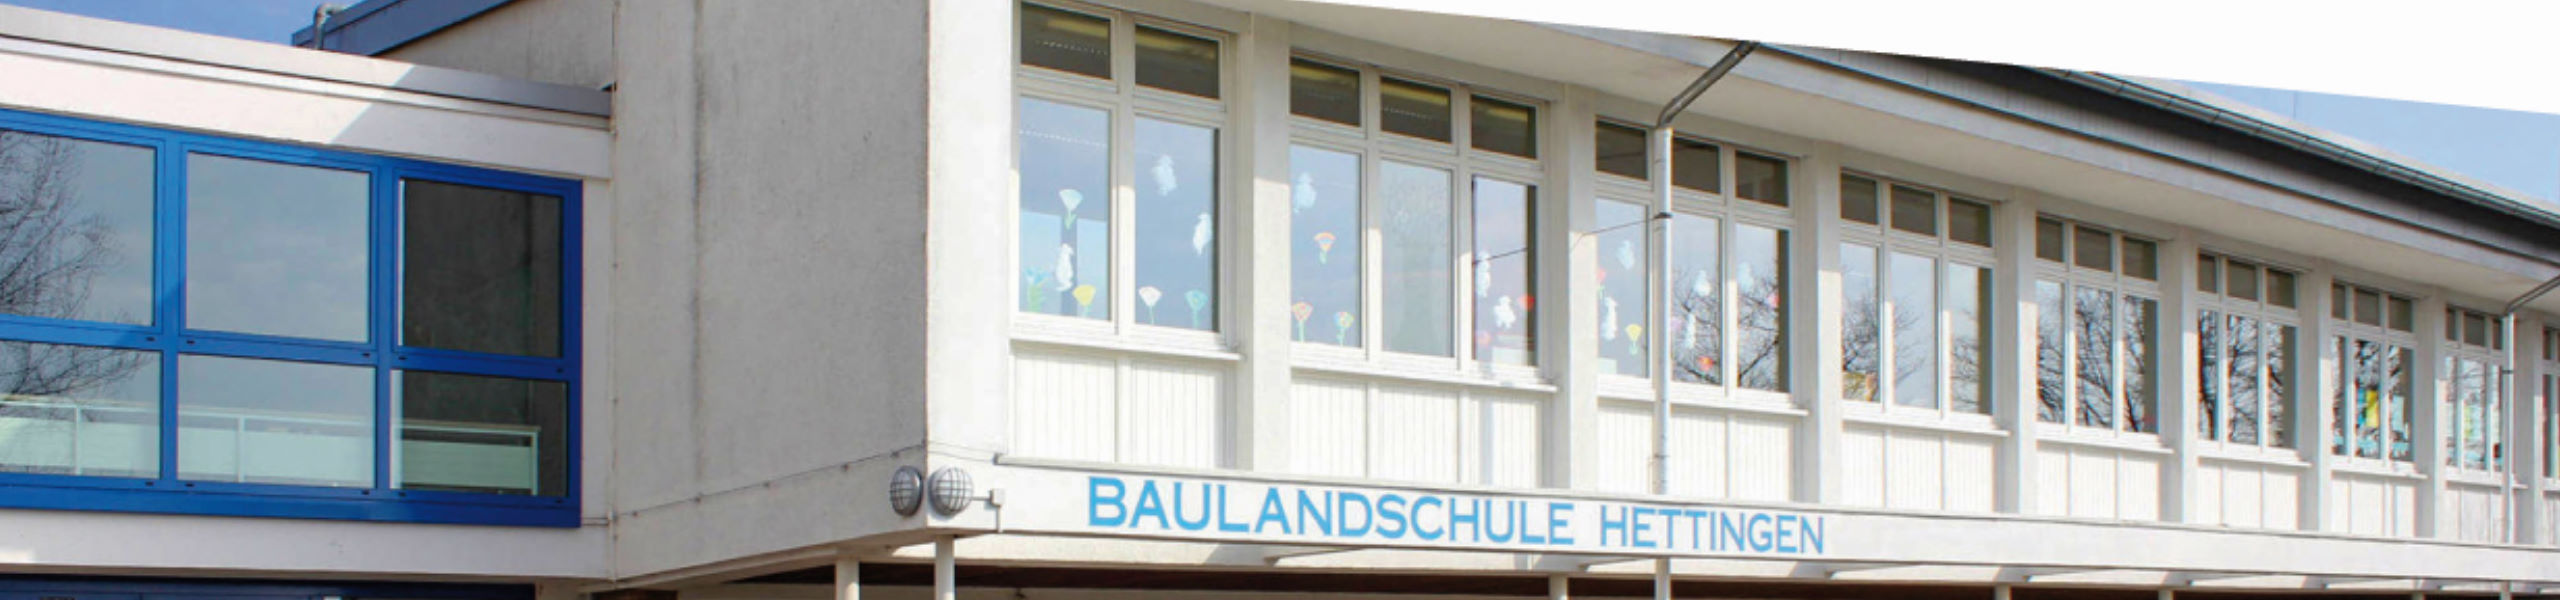 Baulandschule Hettingen - Hilfekompass für Eltern